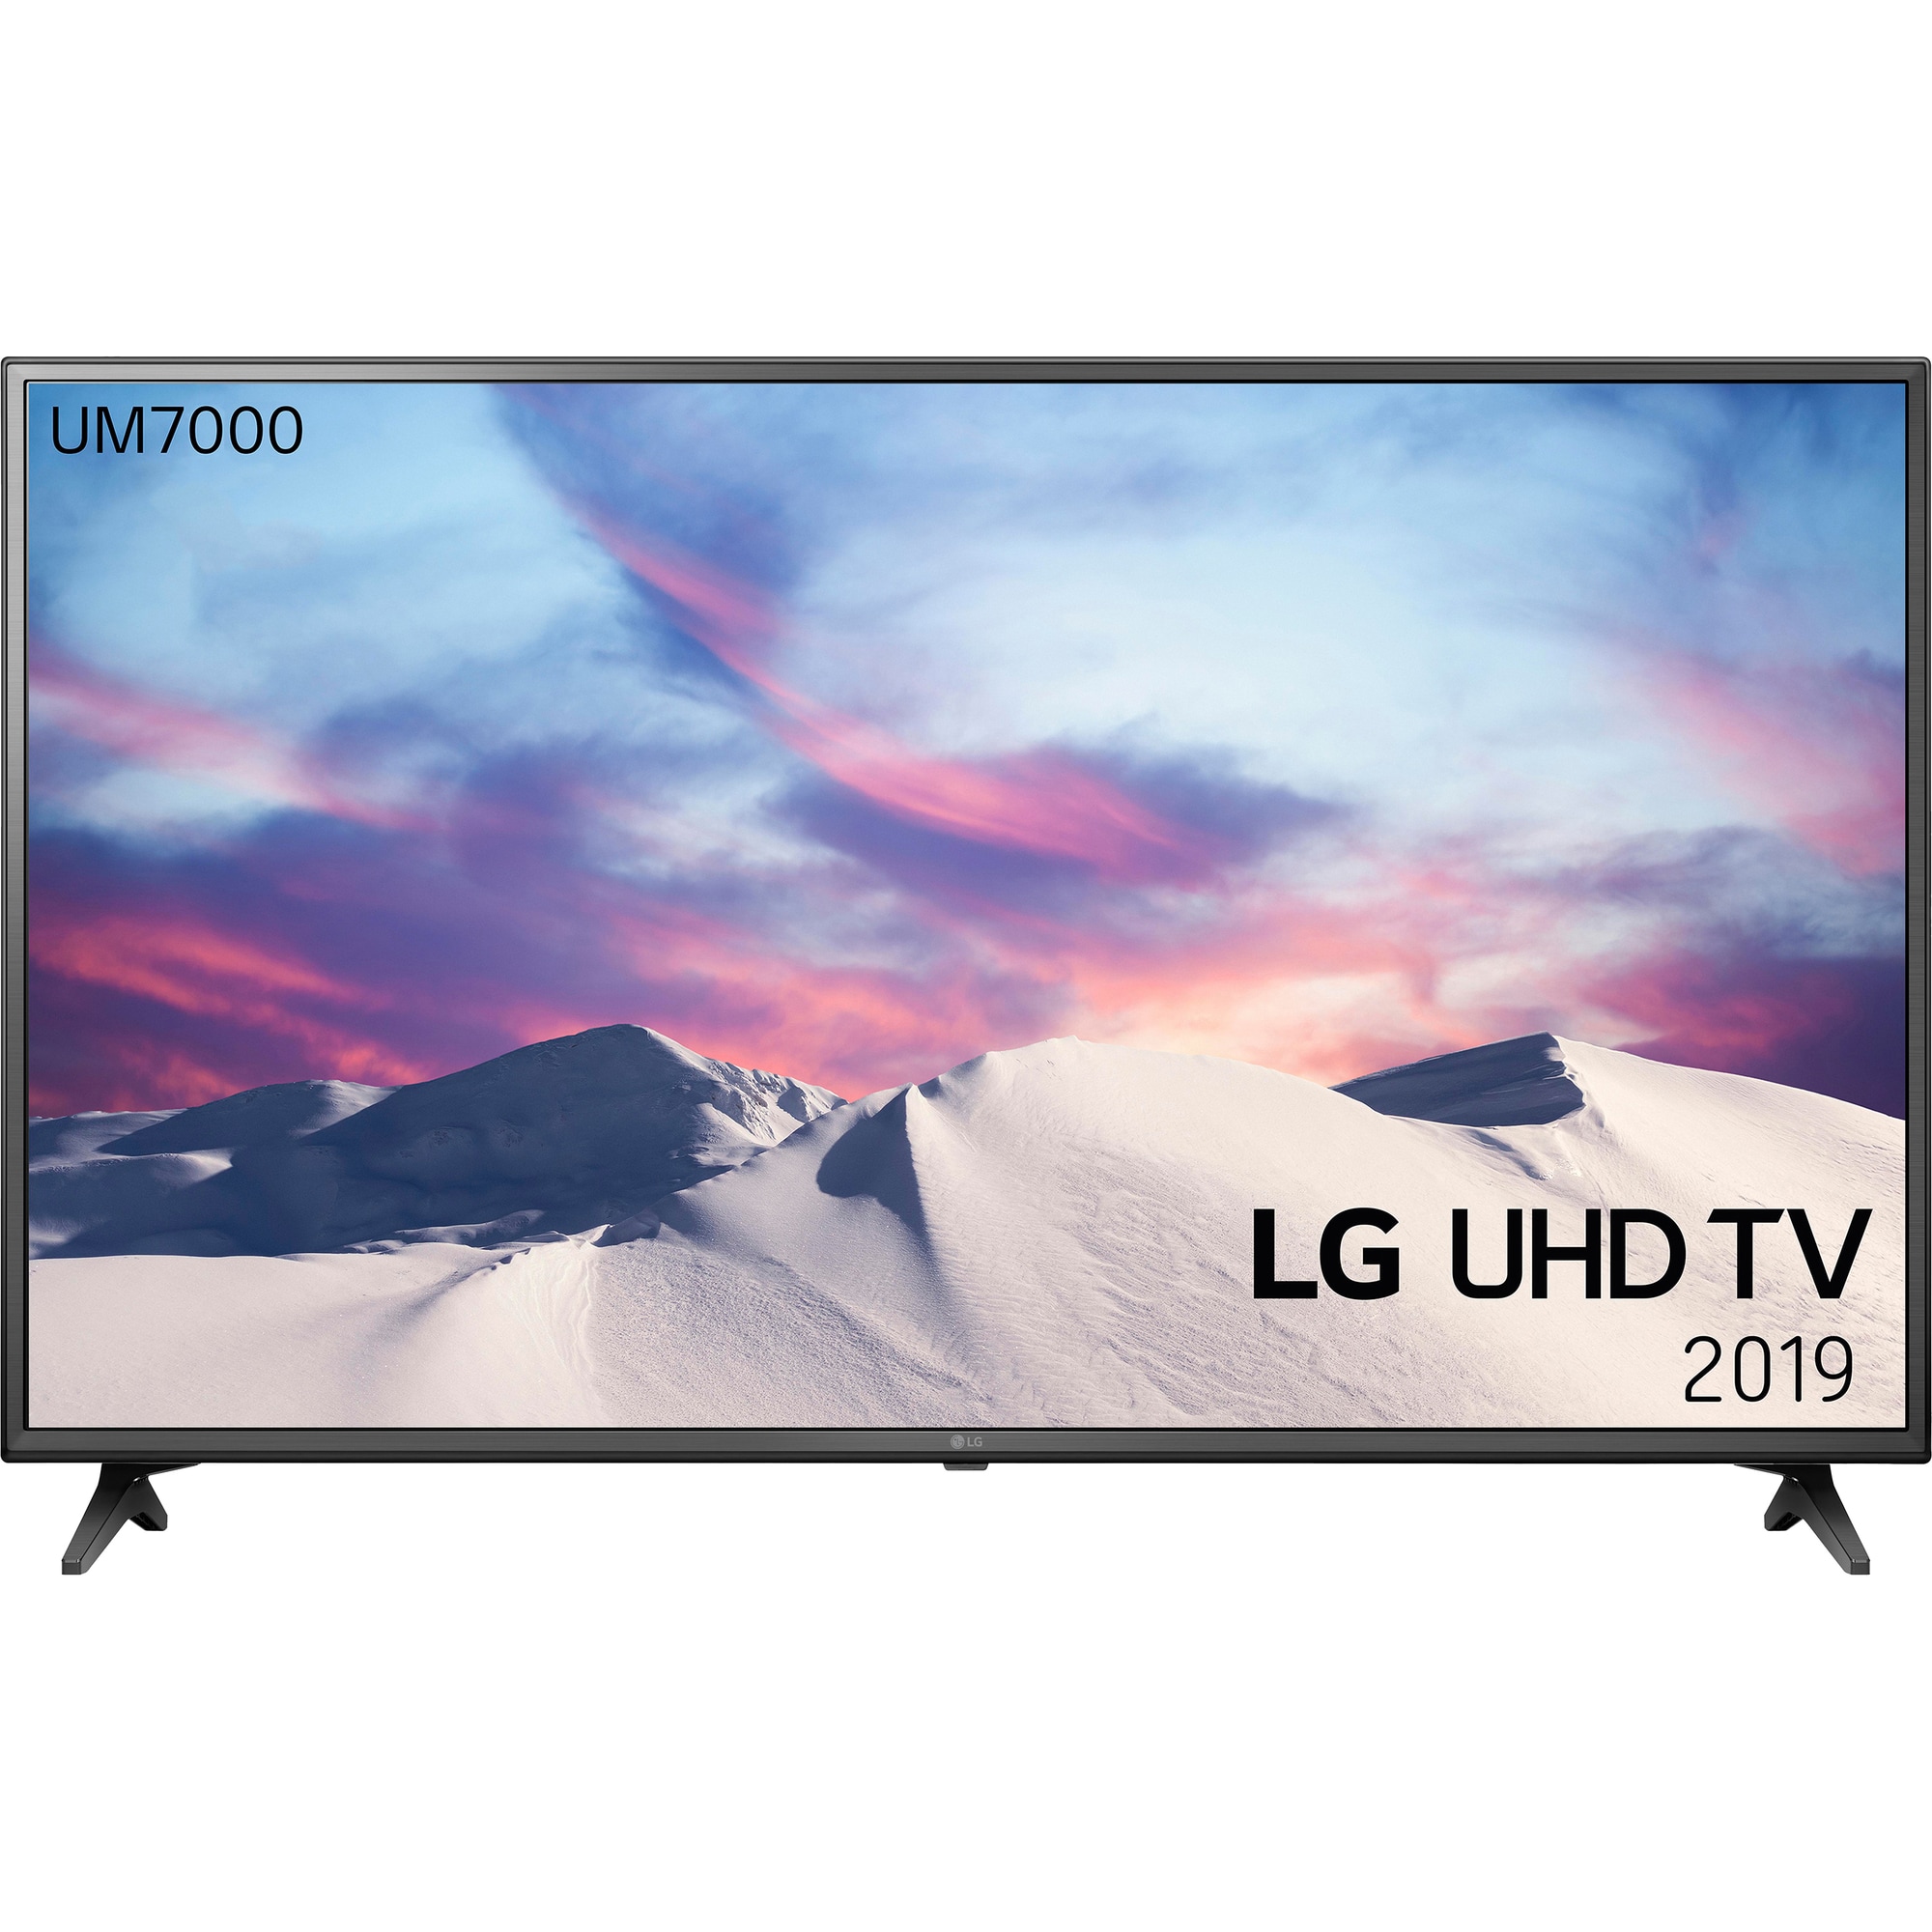 LG 55" UM7000 4K UHD Smart TV 55UM7000 - Elkjøp